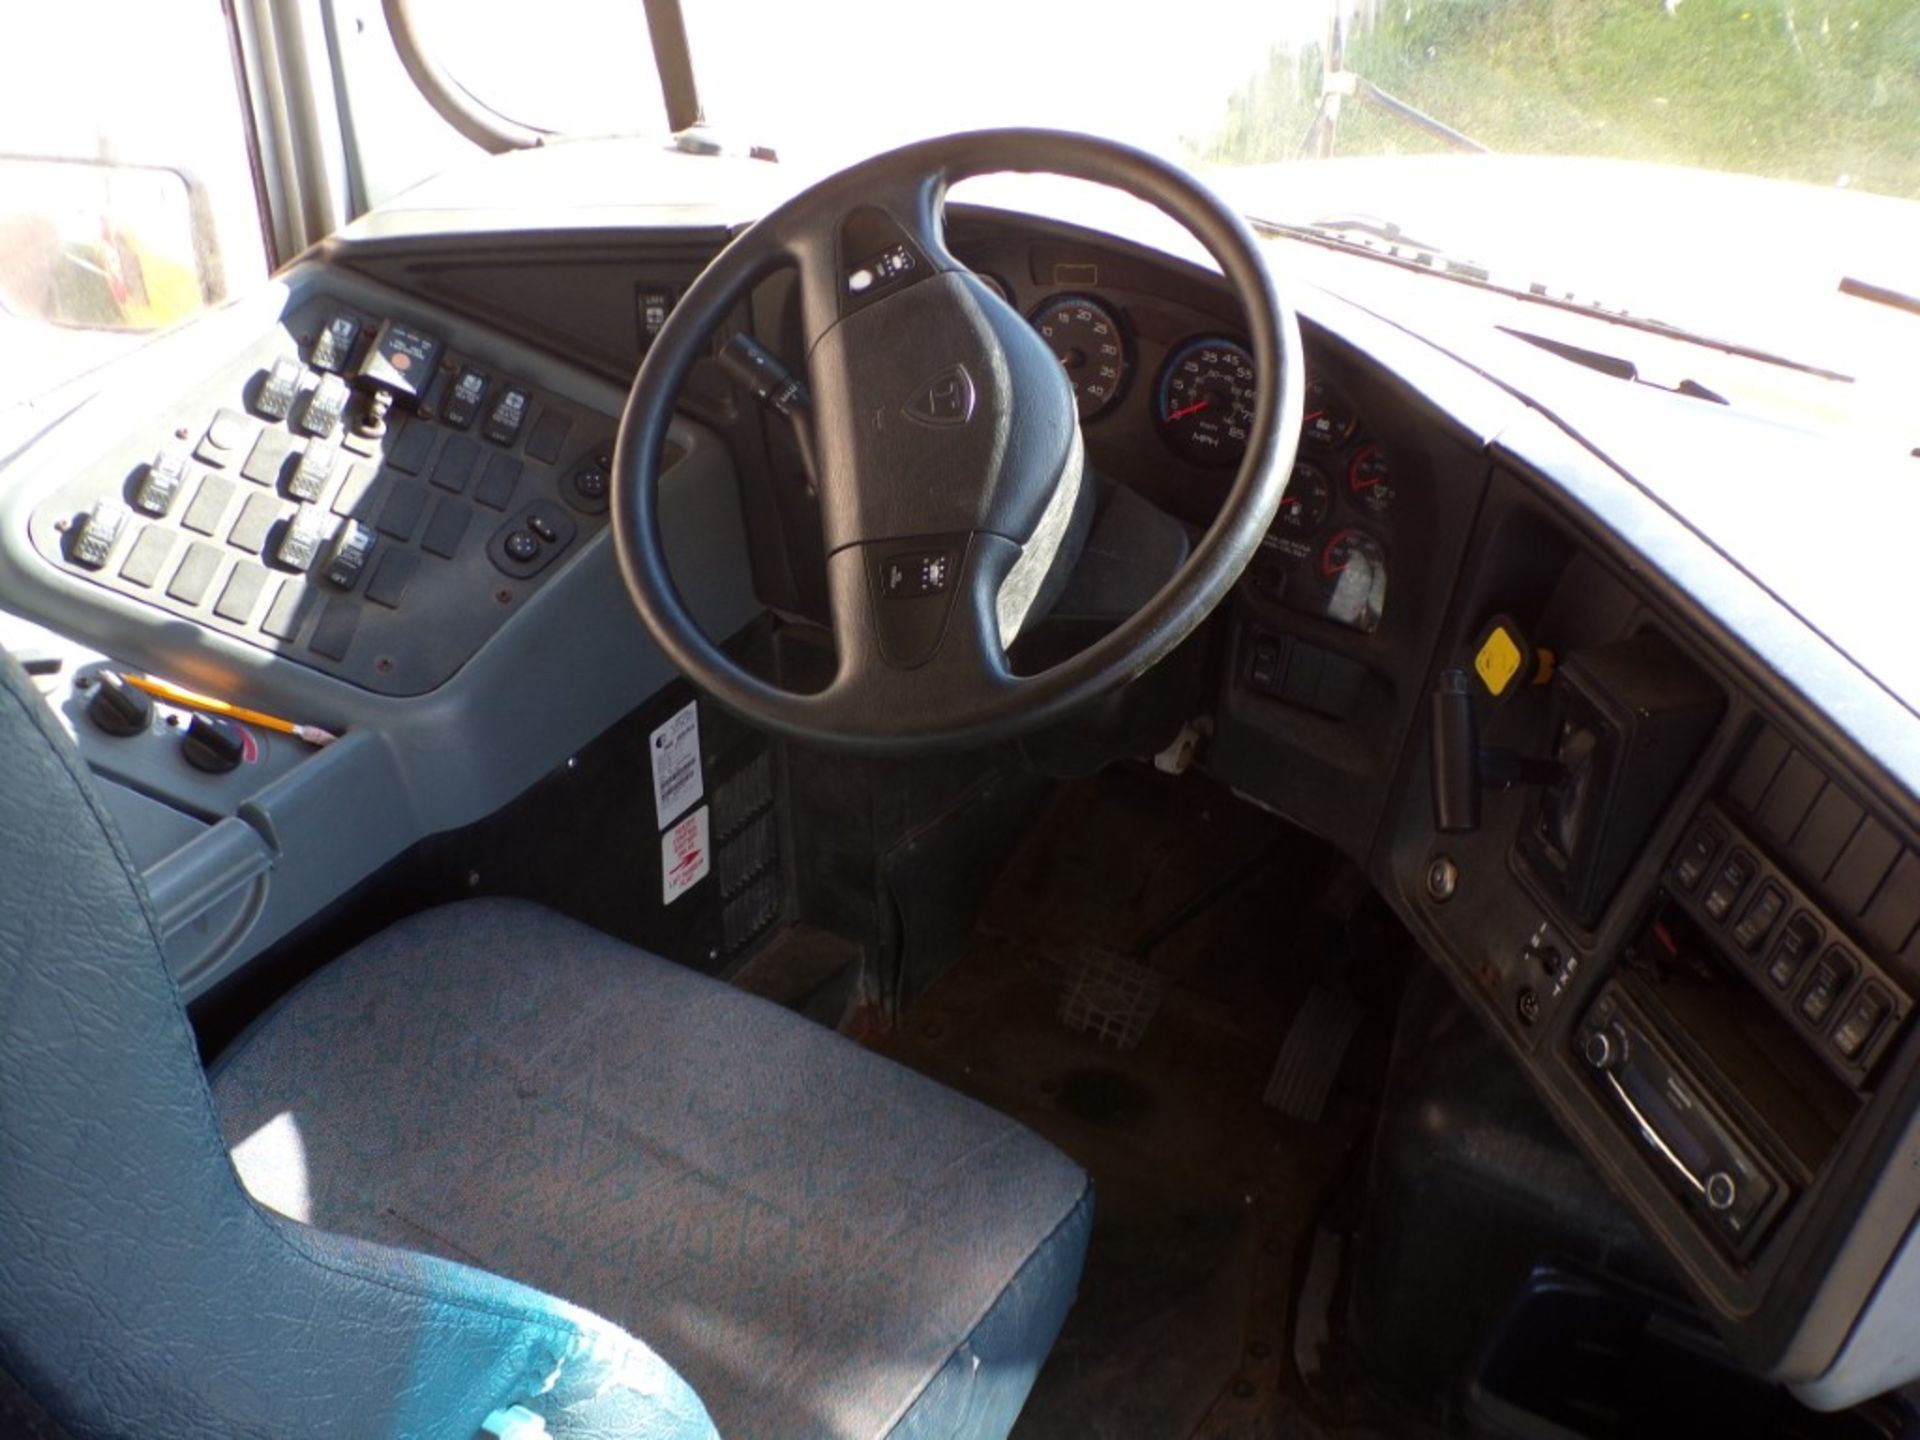 2014 International 66 Seat School Bus, Maxx Force Diesel, 165,315 Miles, # 265, Vin # - Image 7 of 7